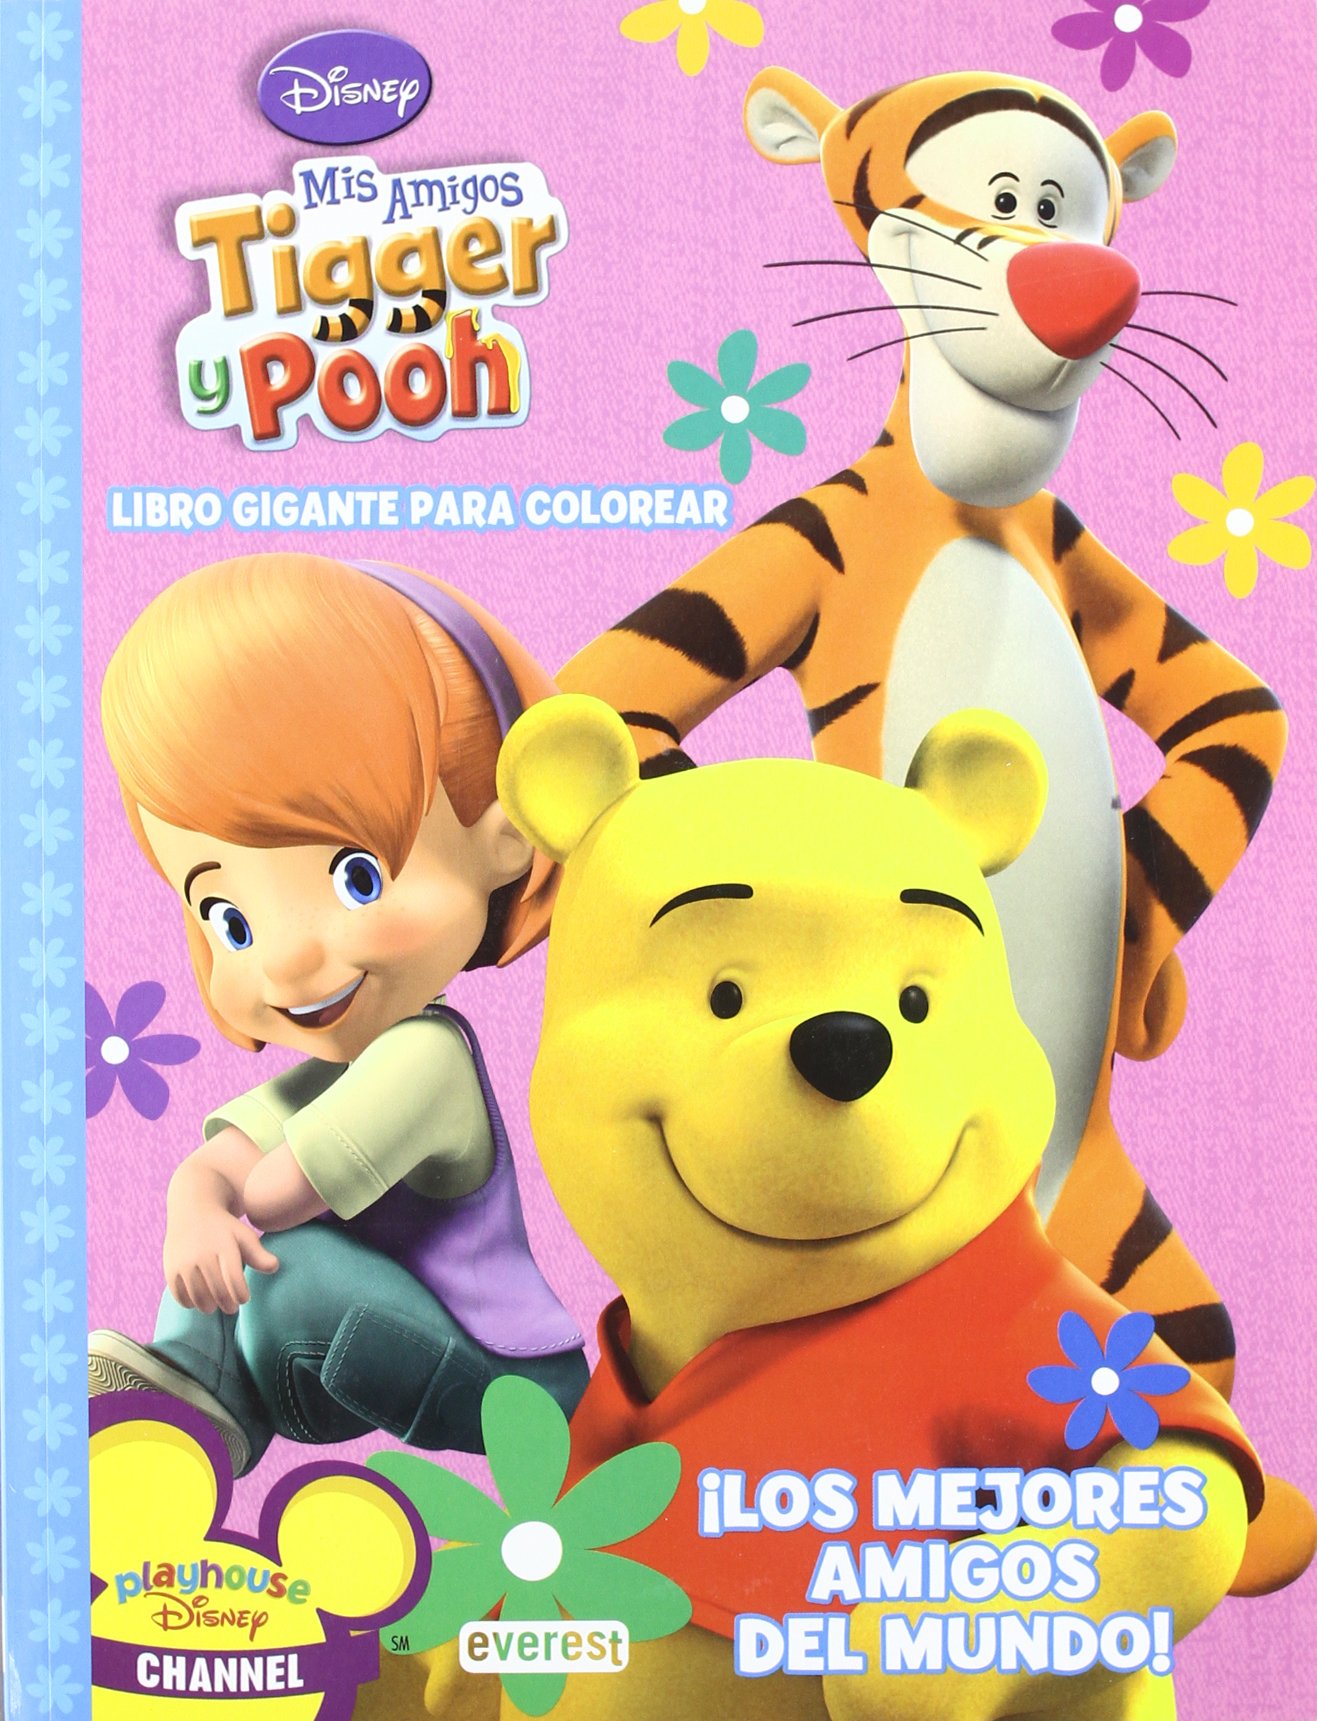 Libro: Disney Mis Amigos Tigger y Pooh - Libro gigante para colorear ¡Los mejores amigos del mundo! Por Walt Disney Company